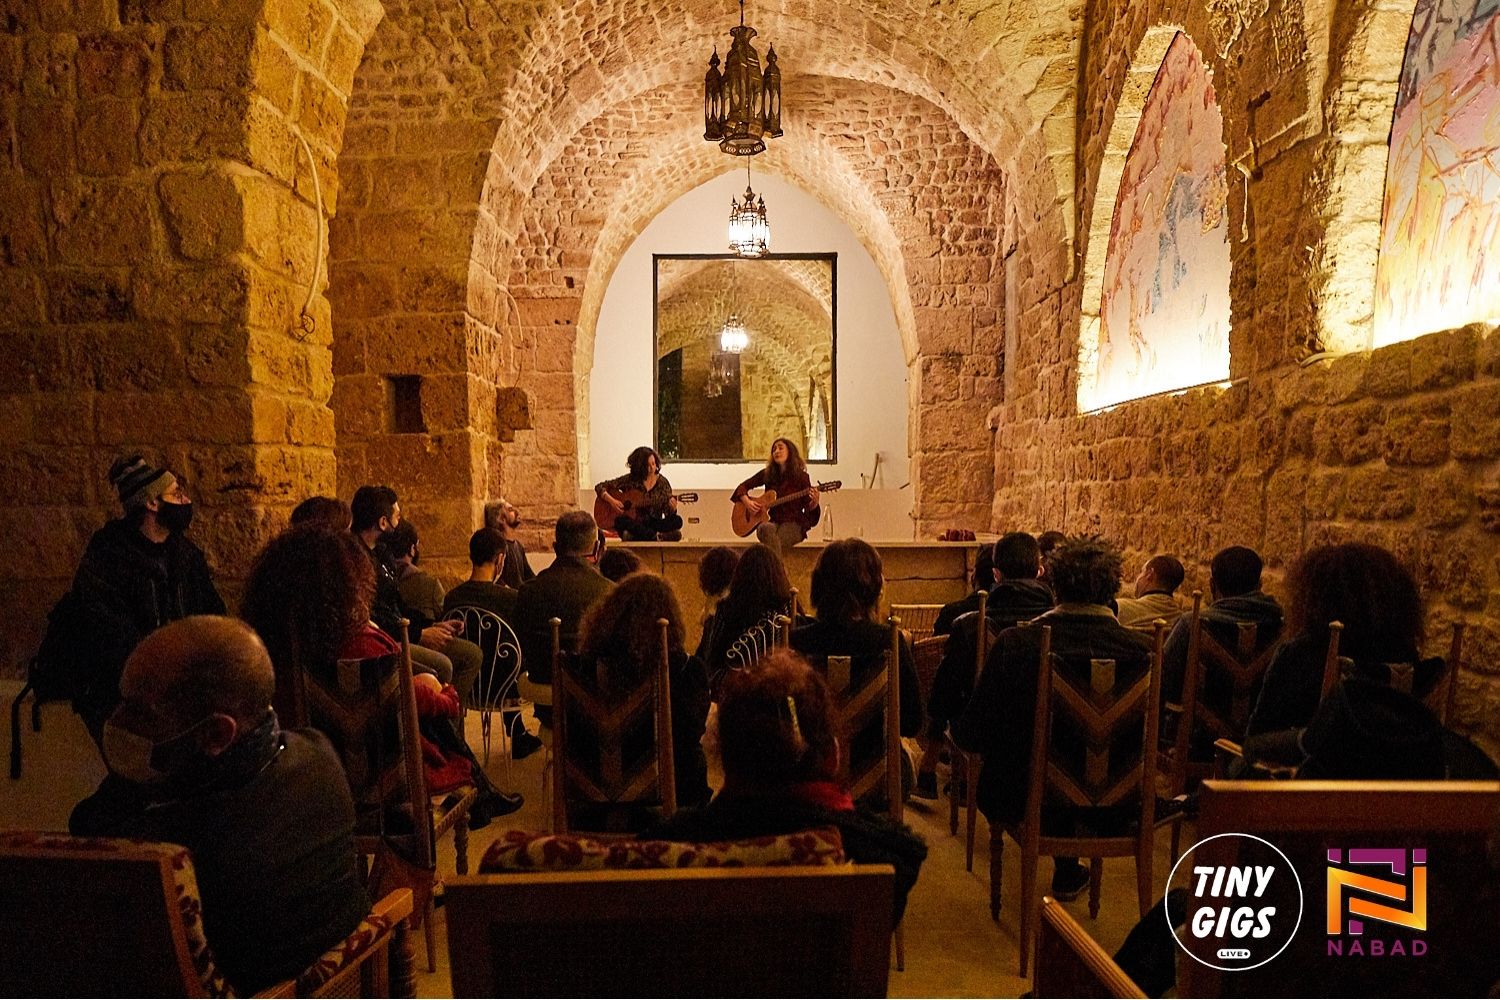 Las “Jam Sessions” de Beirut cuentan con el apoyo de NABAD, un programa innovador que lanzó la Facultad de Bellas Artes y Cultura de la Universidad de Dar al-Kalima en respuesta a la explosión en el puerto de Beirut, Líbano. (Foto por Cliff Makhoul)